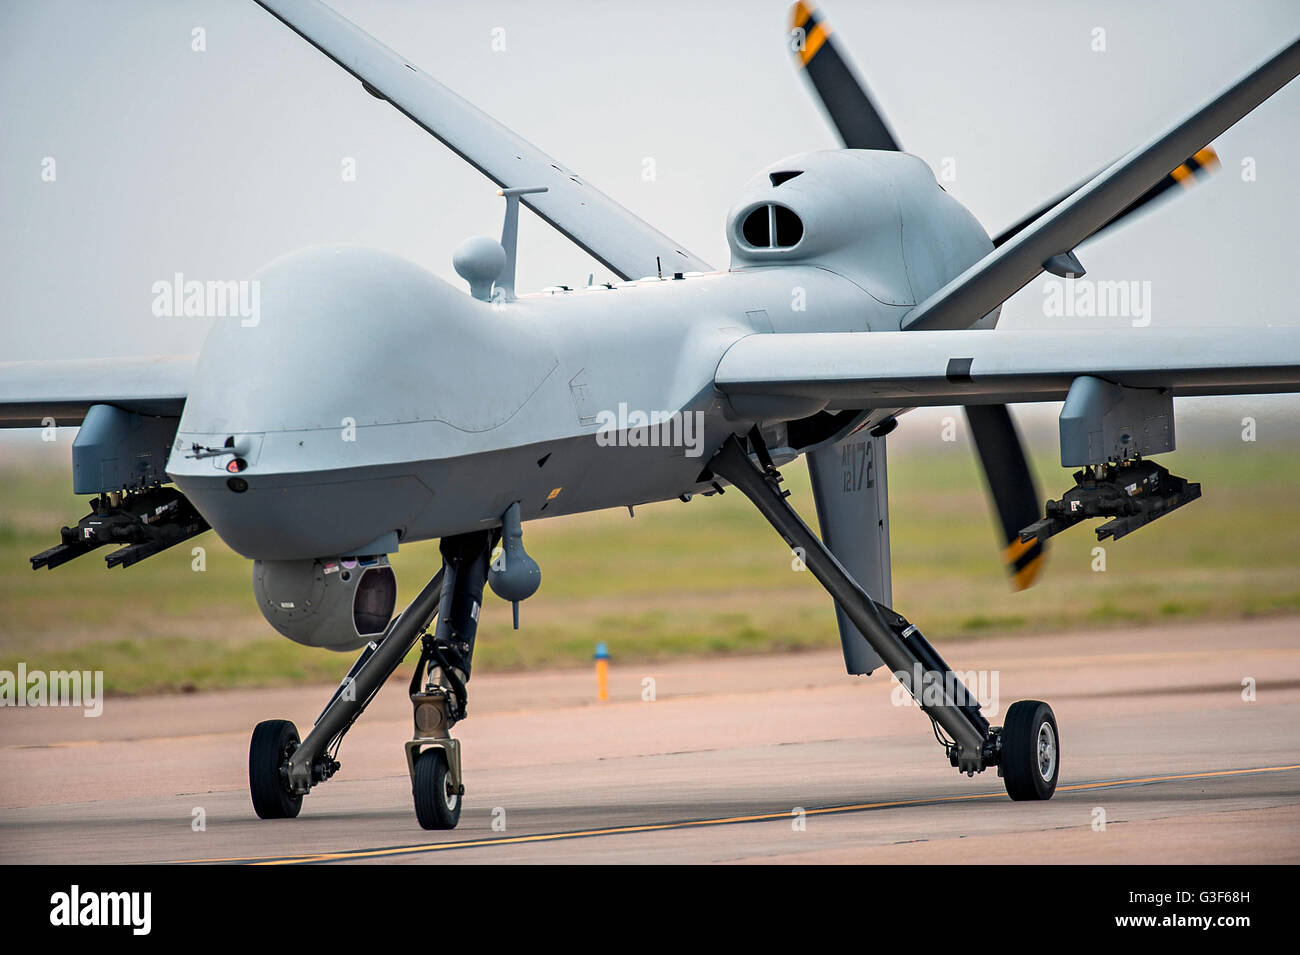 Un U.S. Air Force MQ-9 Reaper drone sur le taxi way at Cannon Air Force Base, le 29 mai 2016 à Albuquerque, Nouveau Mexique. Banque D'Images